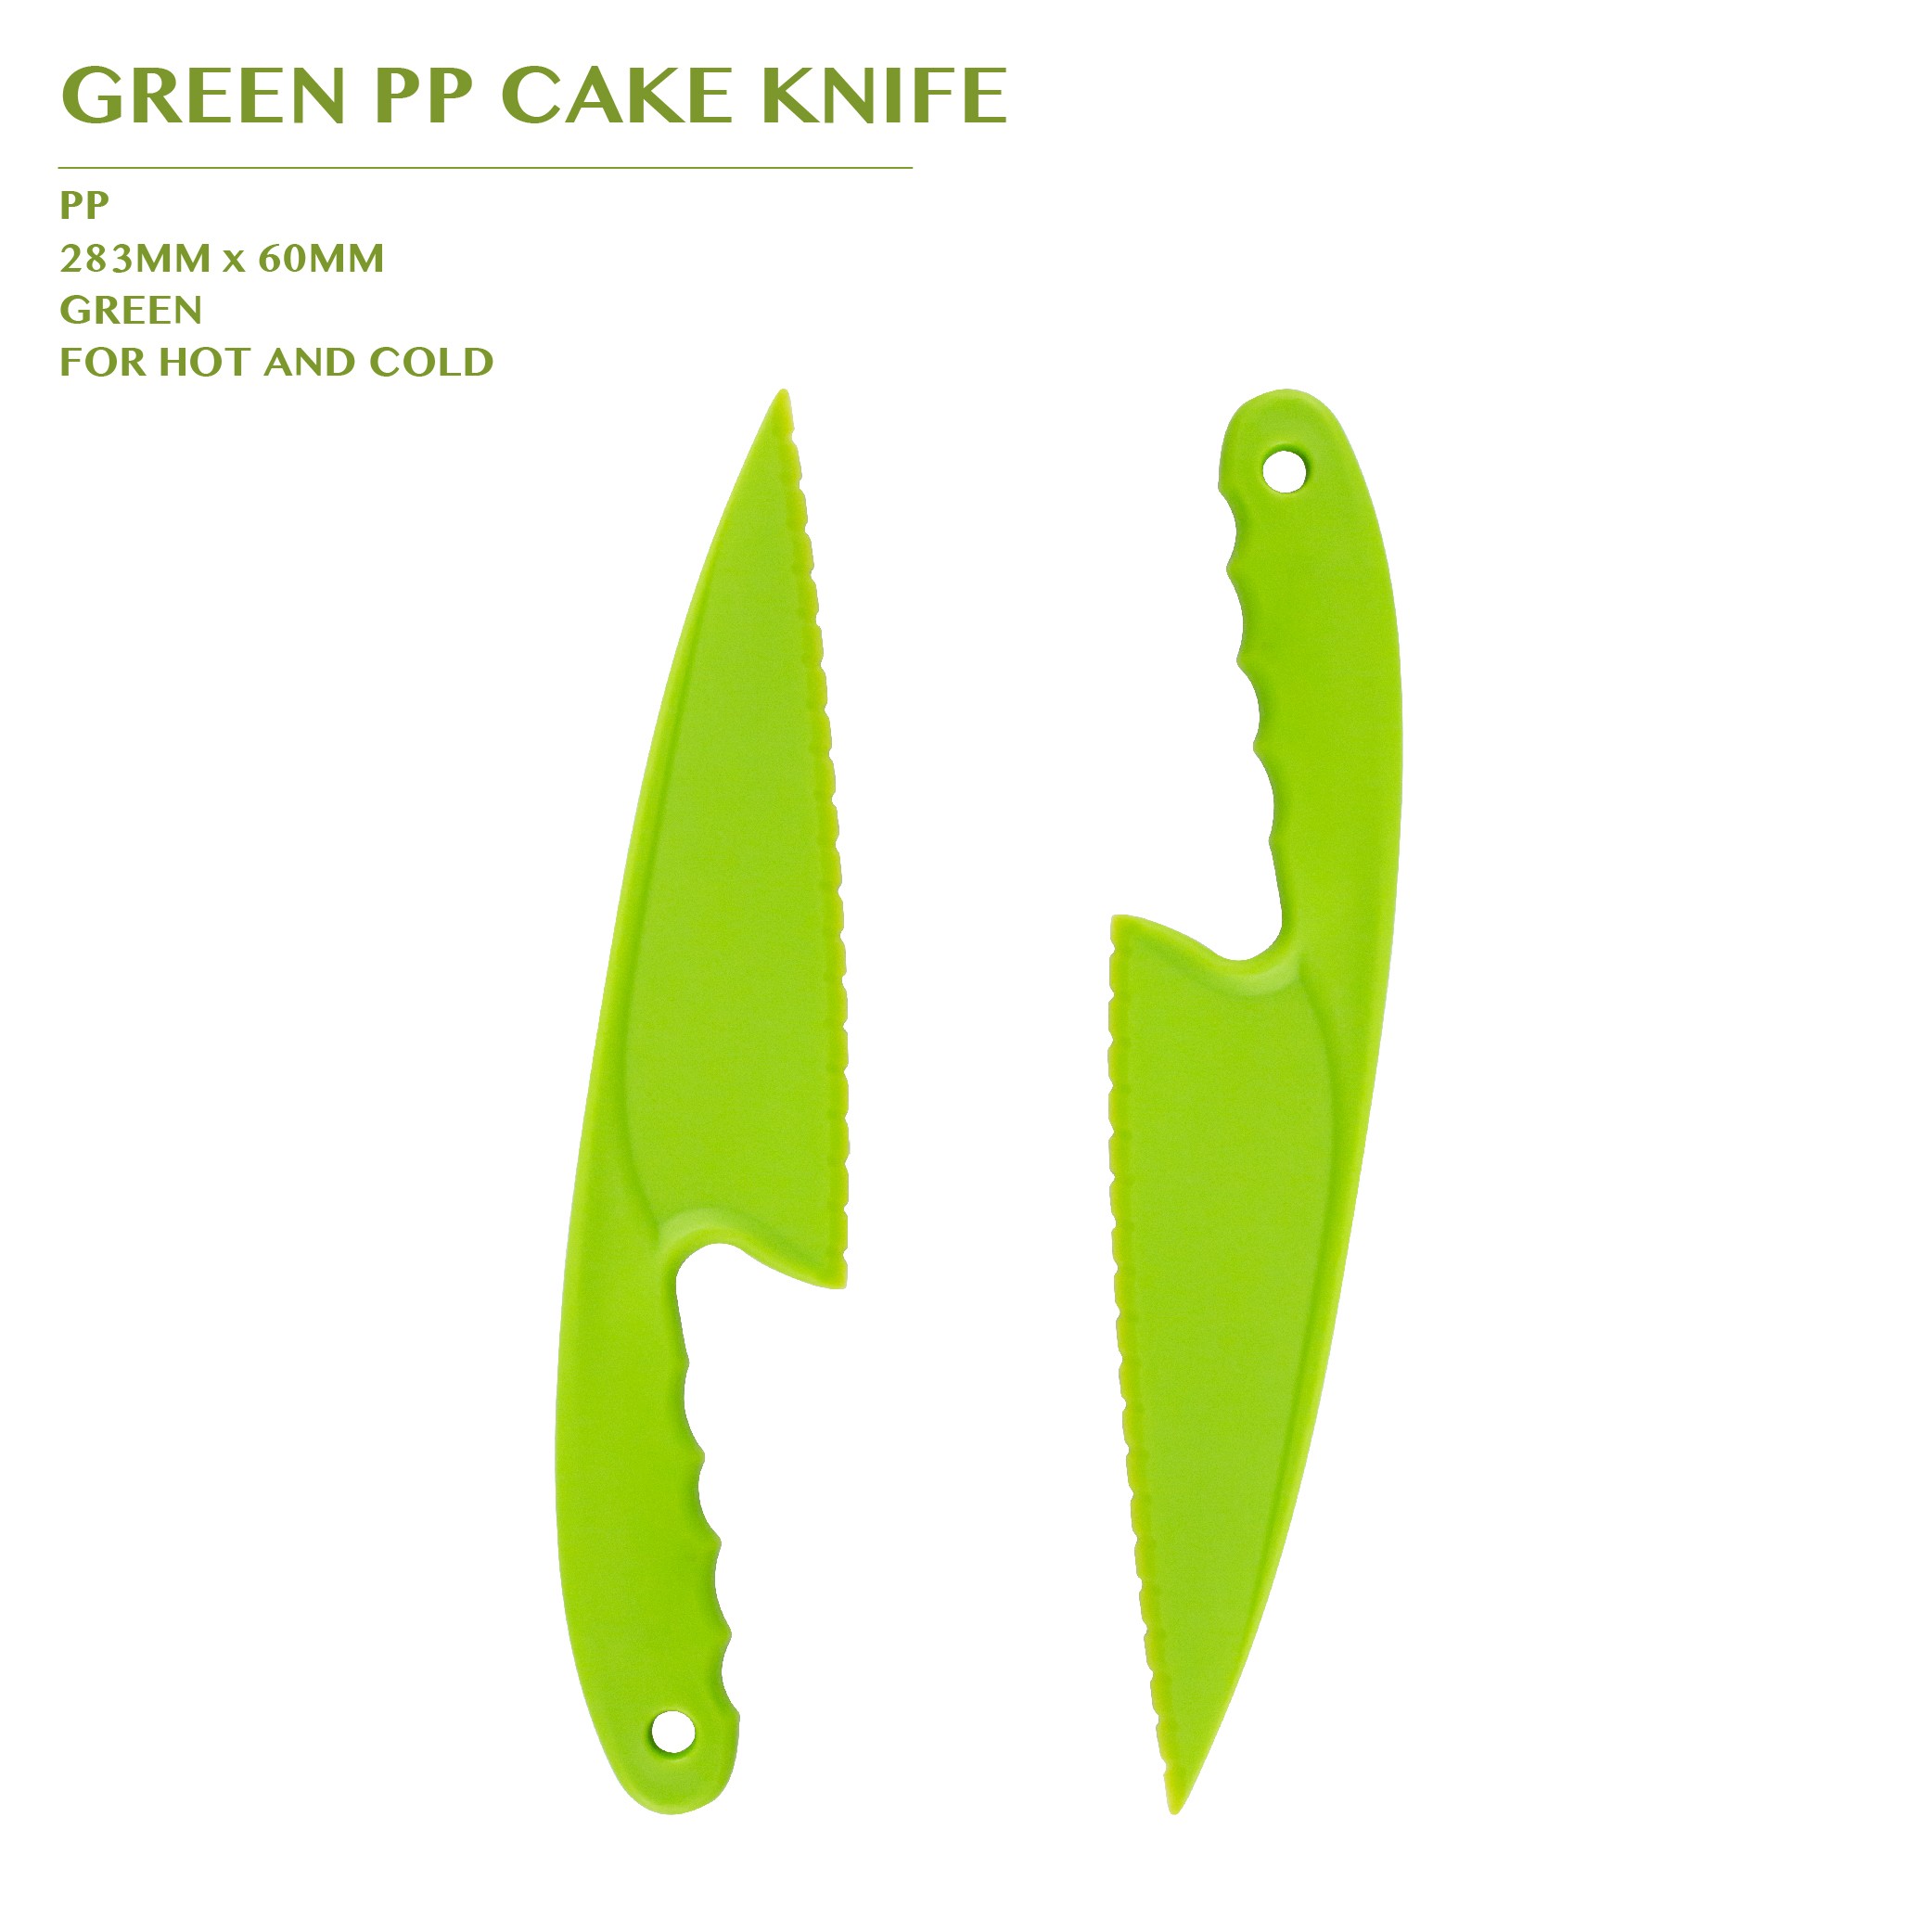 PRE-ORDER GREEN PP CAKE KNIFE